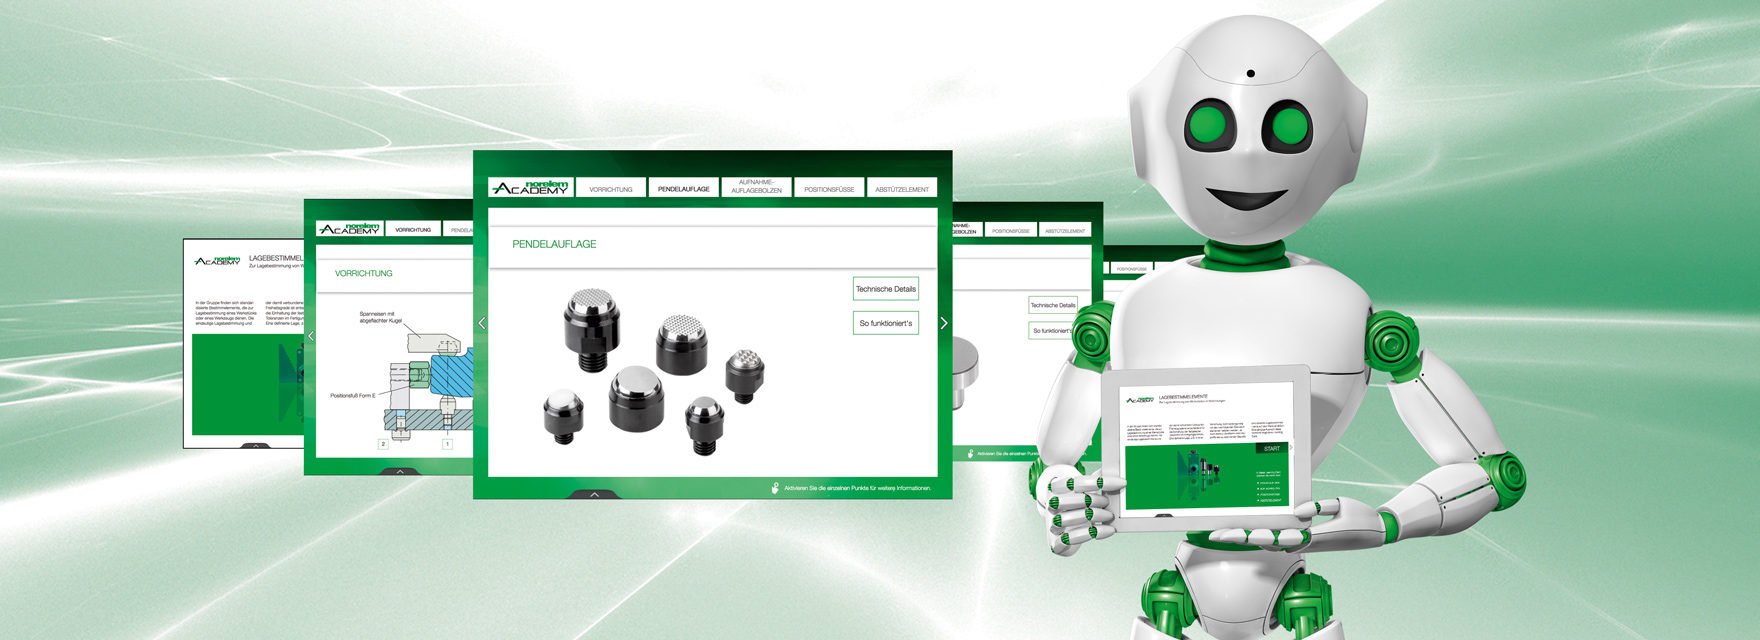 norelem Roboter häkt ein Tablet vor seinem Oberkörper und neben ihm sind Webseitenausschnitte zu sehen